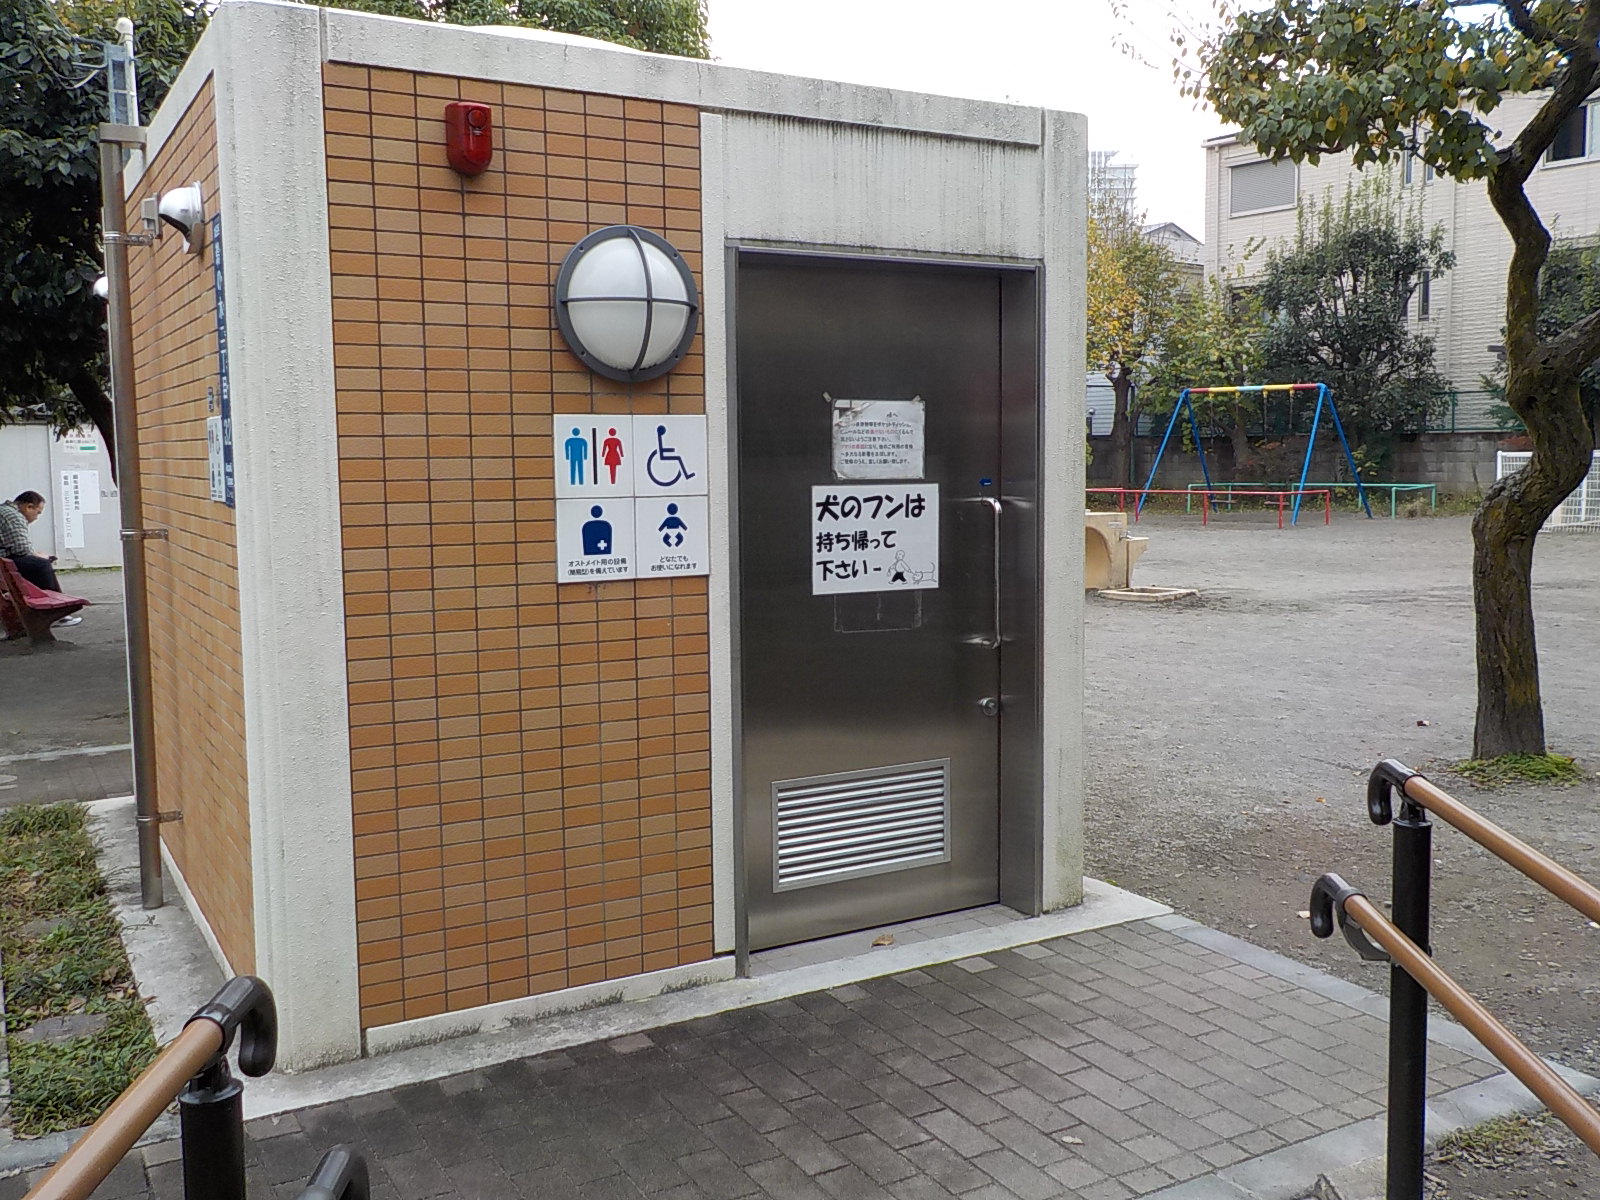 鵜の木二丁目児童公園 車イスで行けるトイレ情報サイト Yorisou ヨリソウ 利用者の方へ安心と優しさを届ける本物の情報を